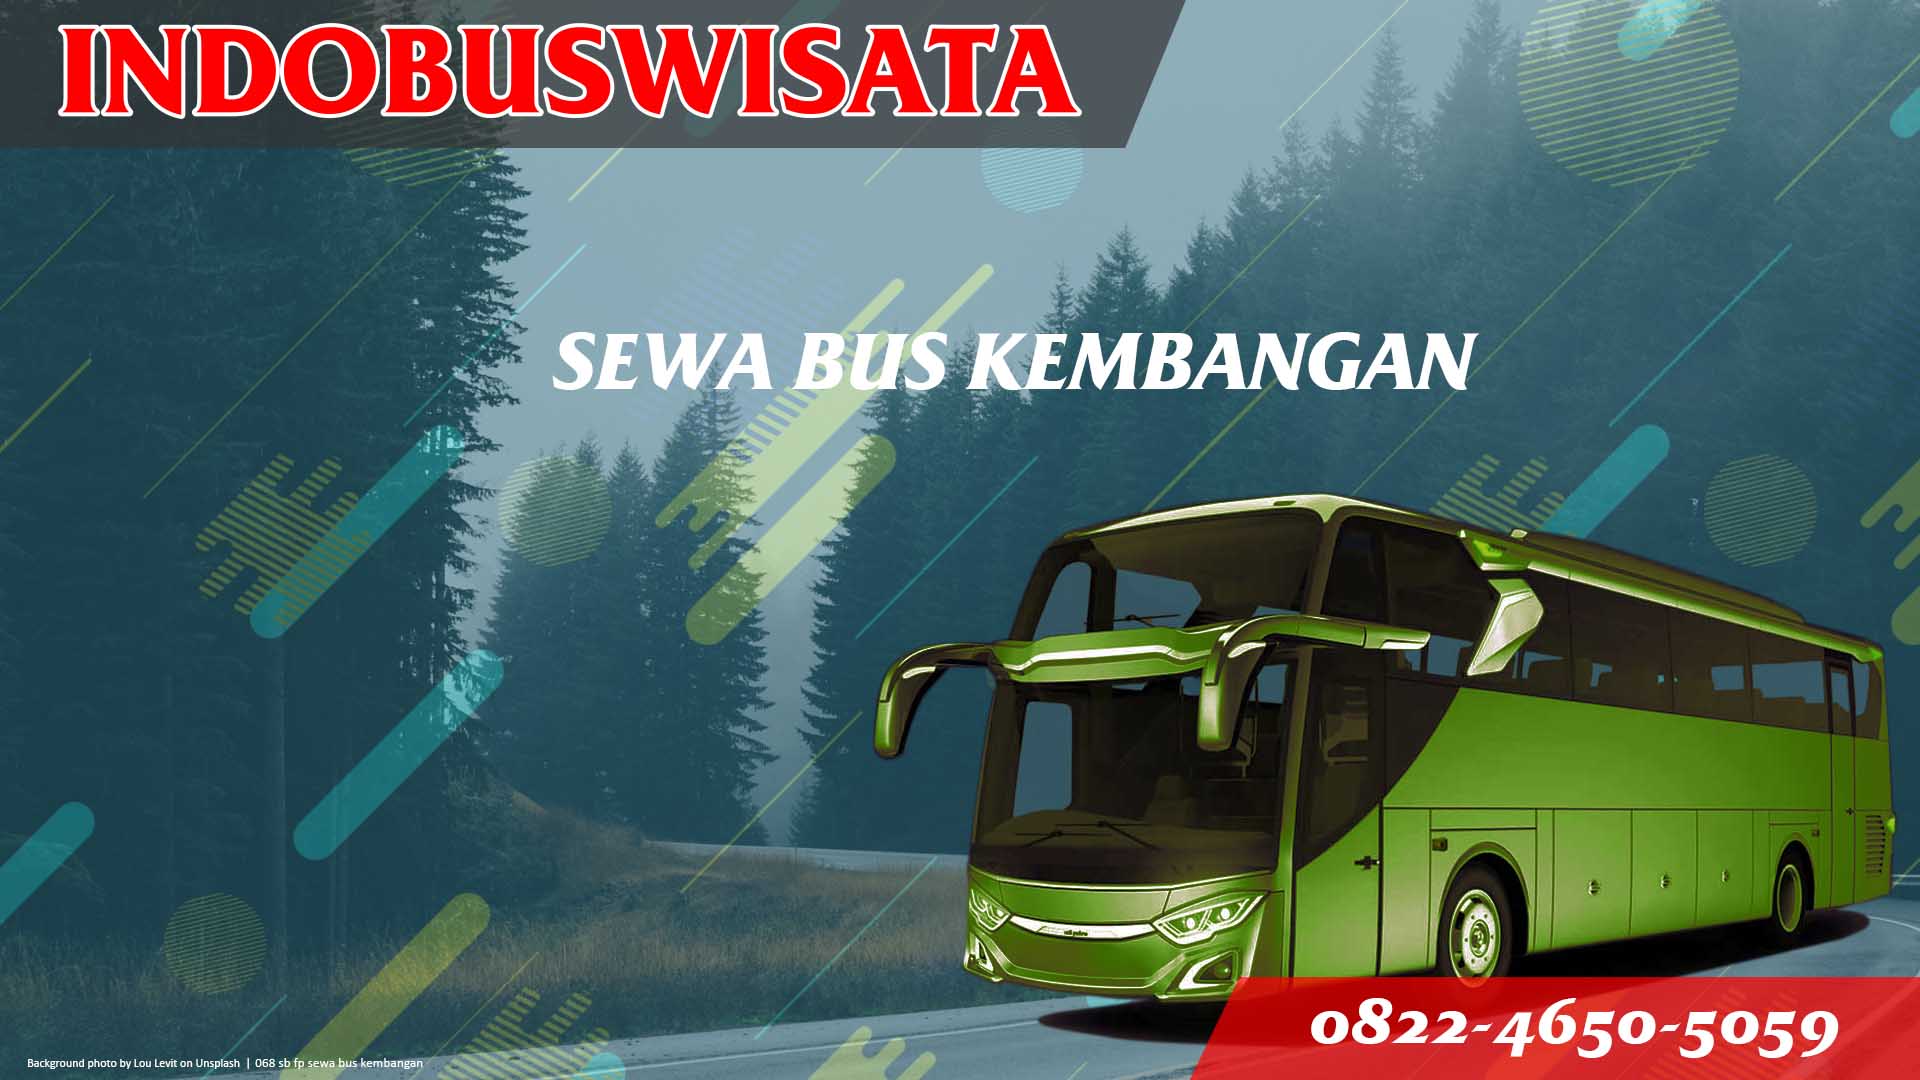 068 Sb Fp Sewa Bus Kembangan Jb 3 Hdd Indobuswisata